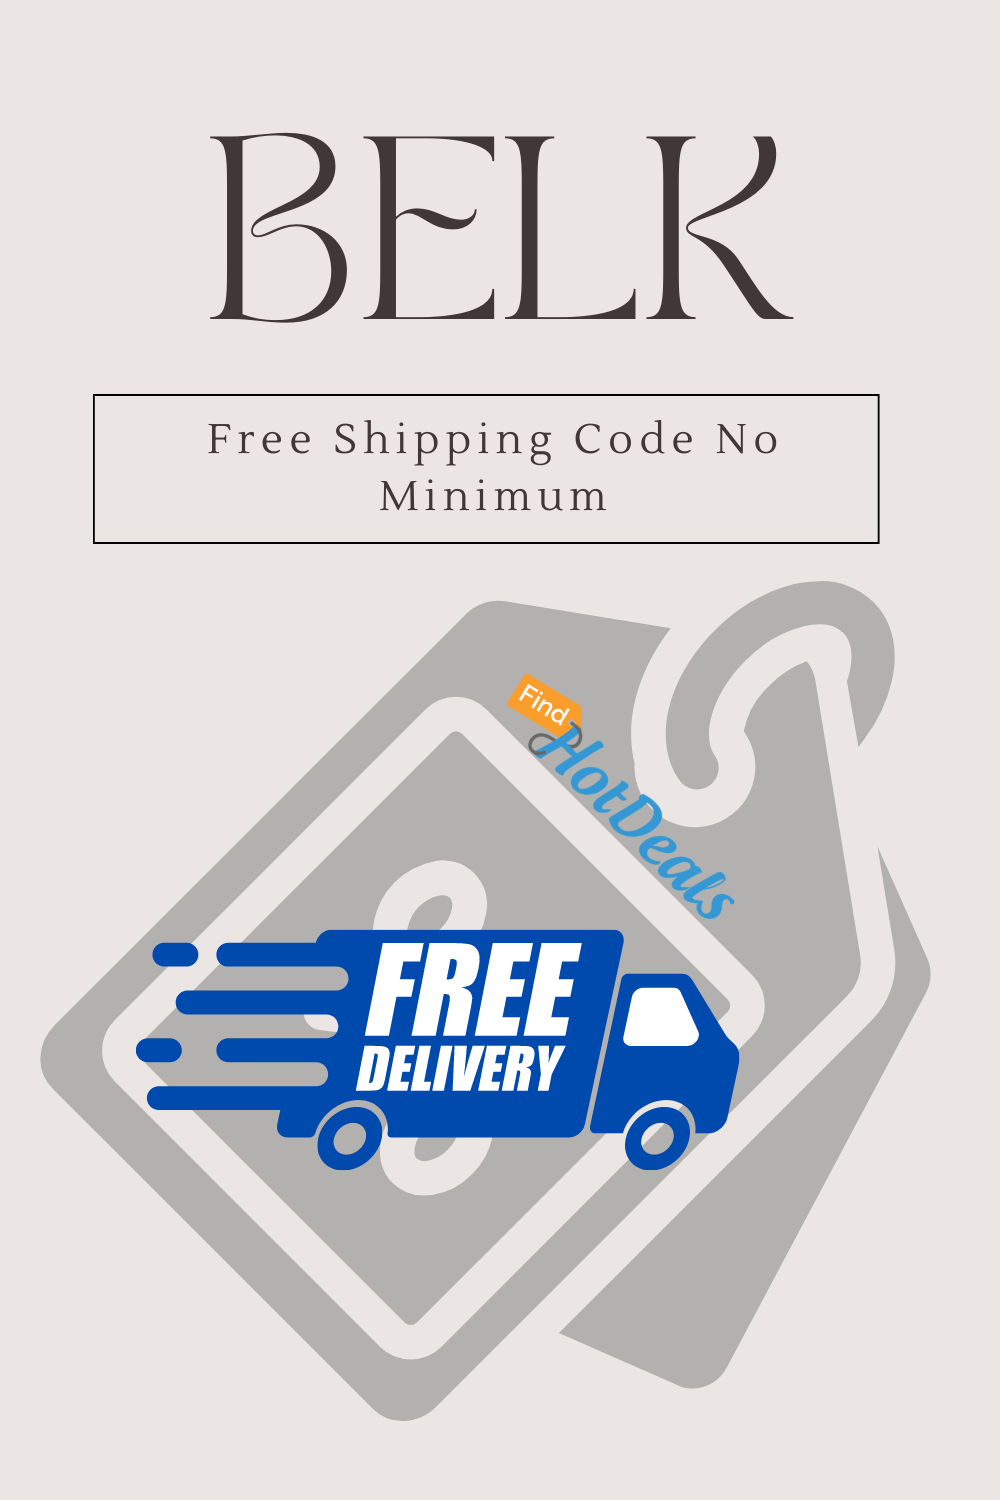 Belk Free Shipping Code No Minimum